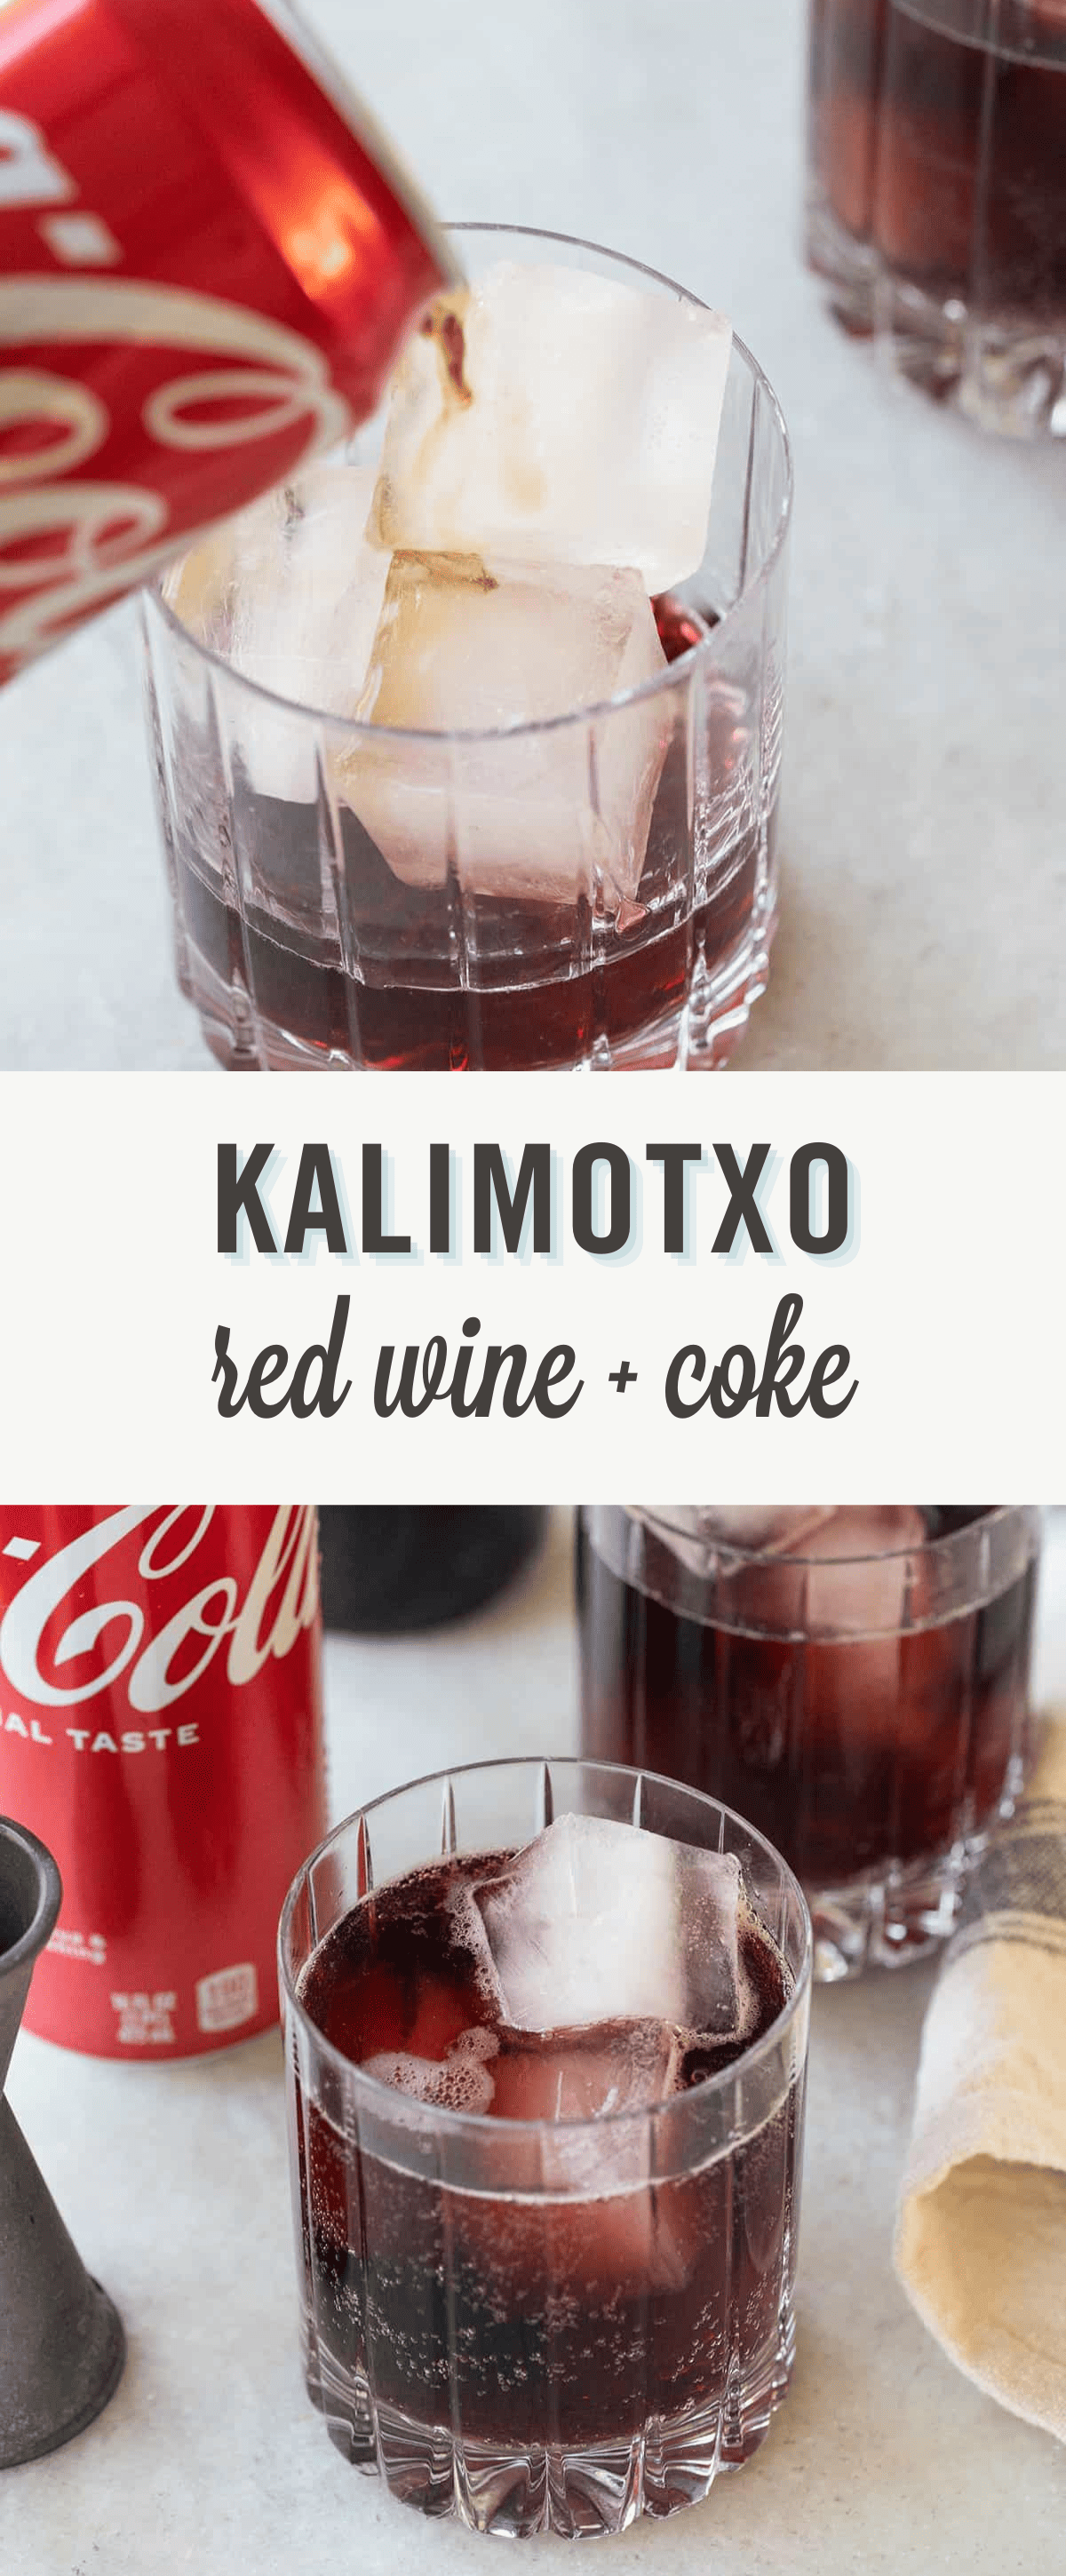 KALIMOTXO in a glass.